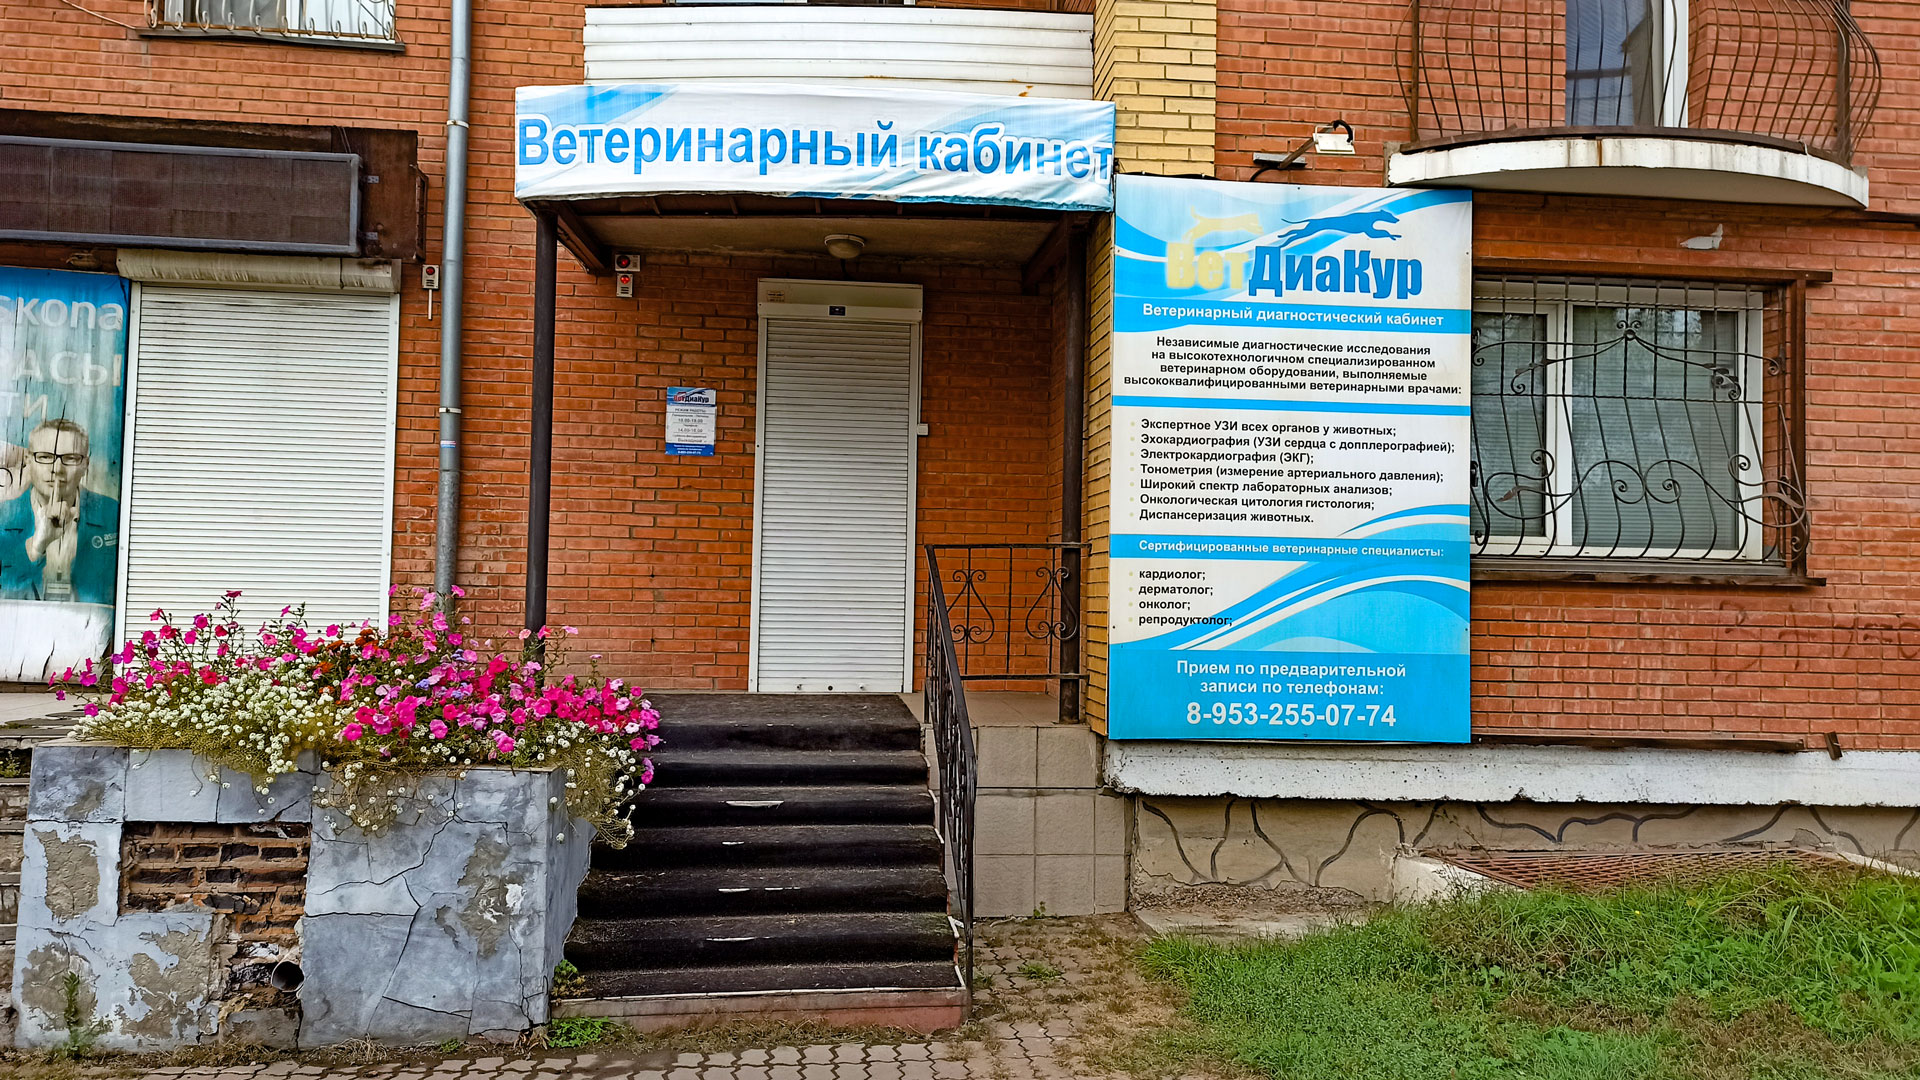 Ветеринарная клиника "ВетДиаКур" в г. Абакан.